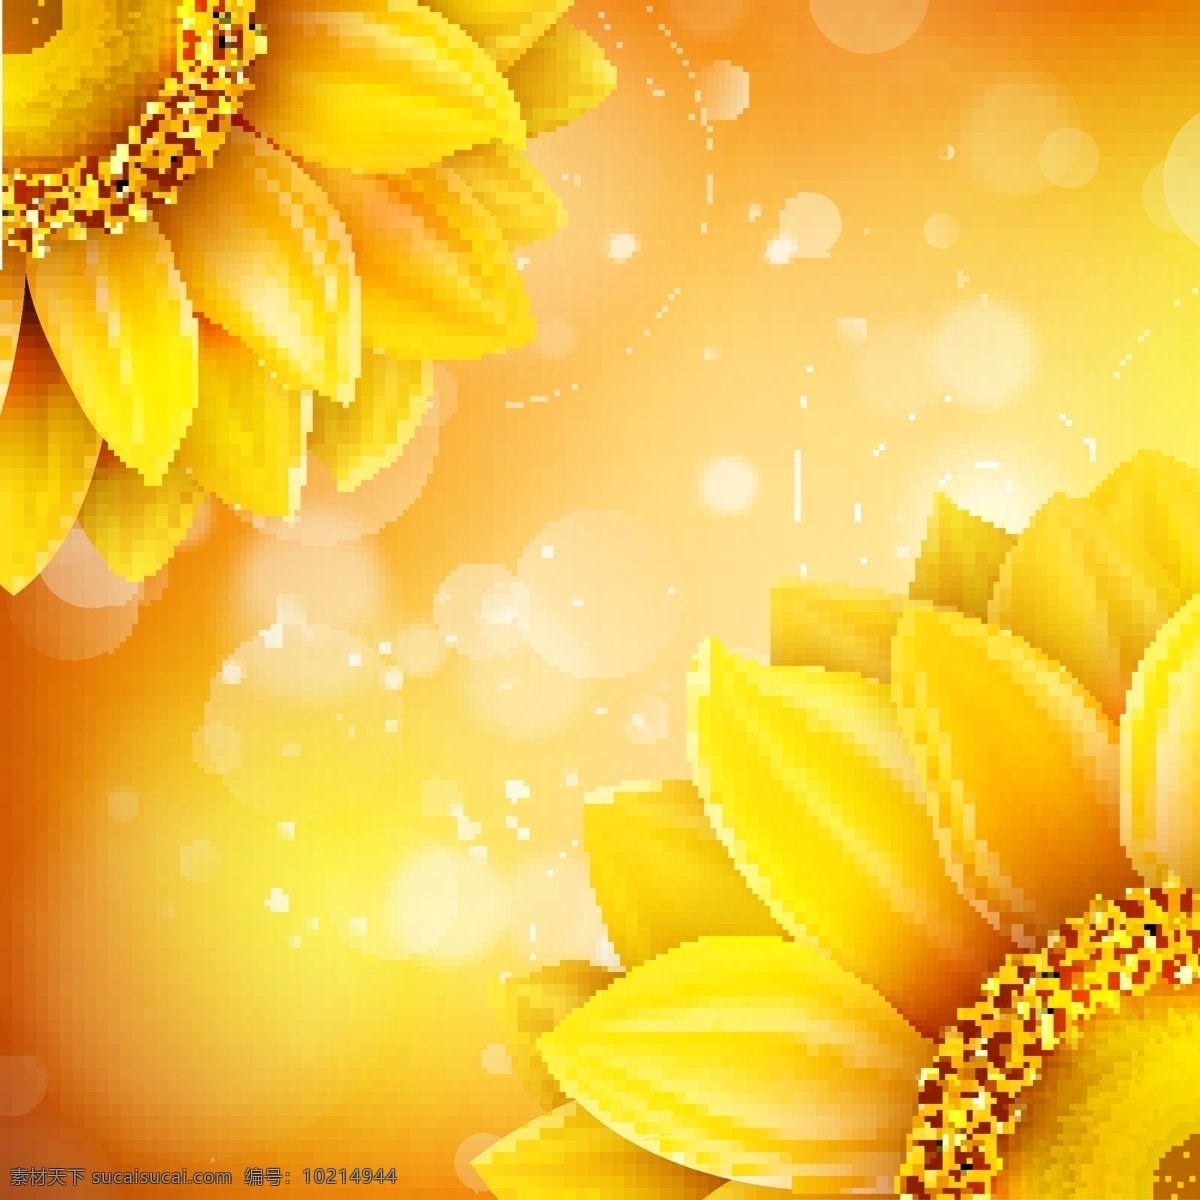 迷幻 背景 向日葵 花朵 金色 纹理 矢量素材 设计素材 背景素材